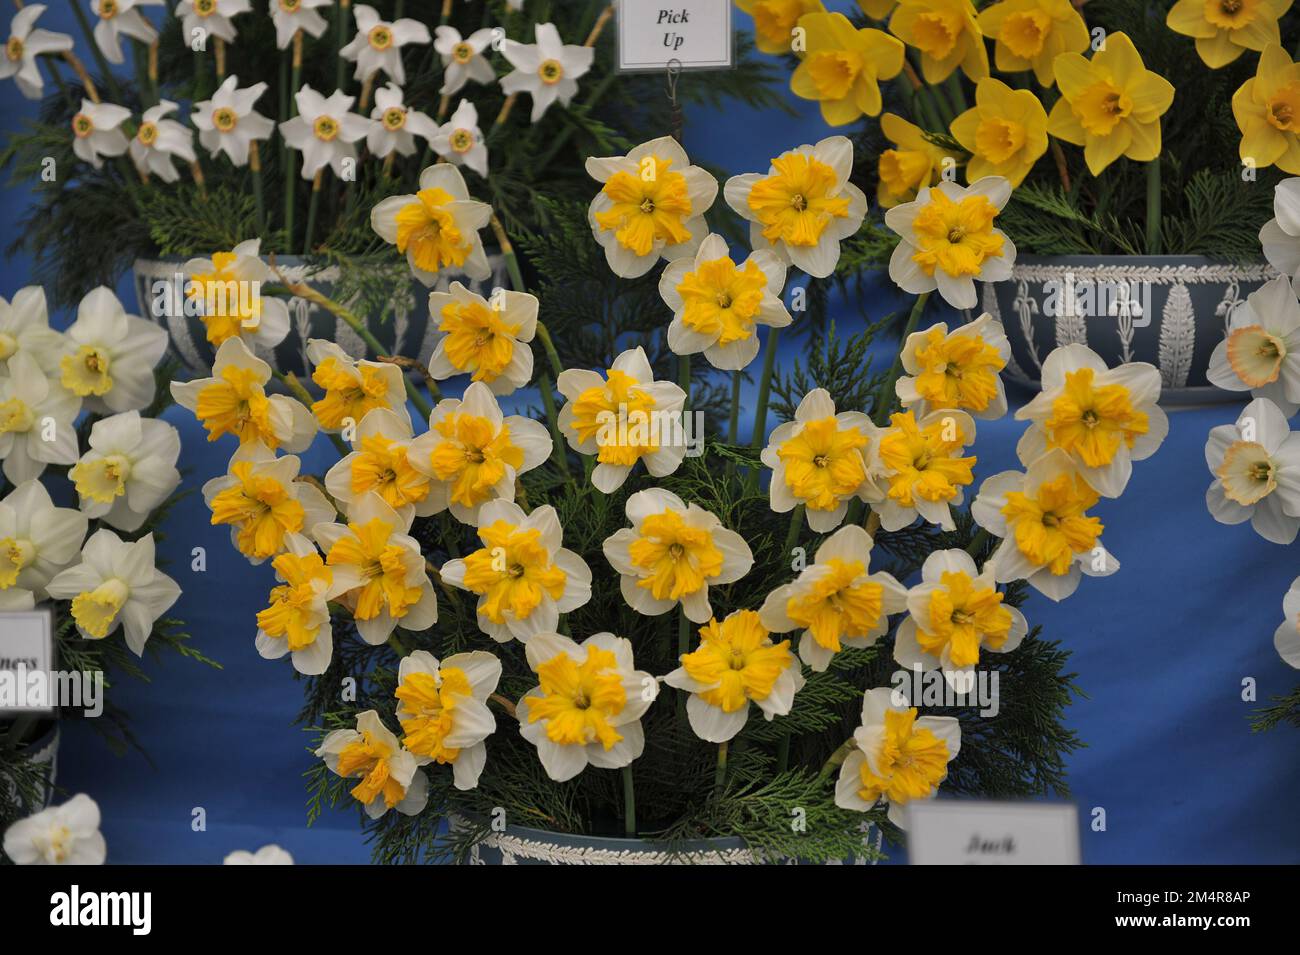 Un bouquet de jonquilles blanches et jaunes à col fendu (Narcisse) se retrouvent sur une exposition en mai Banque D'Images